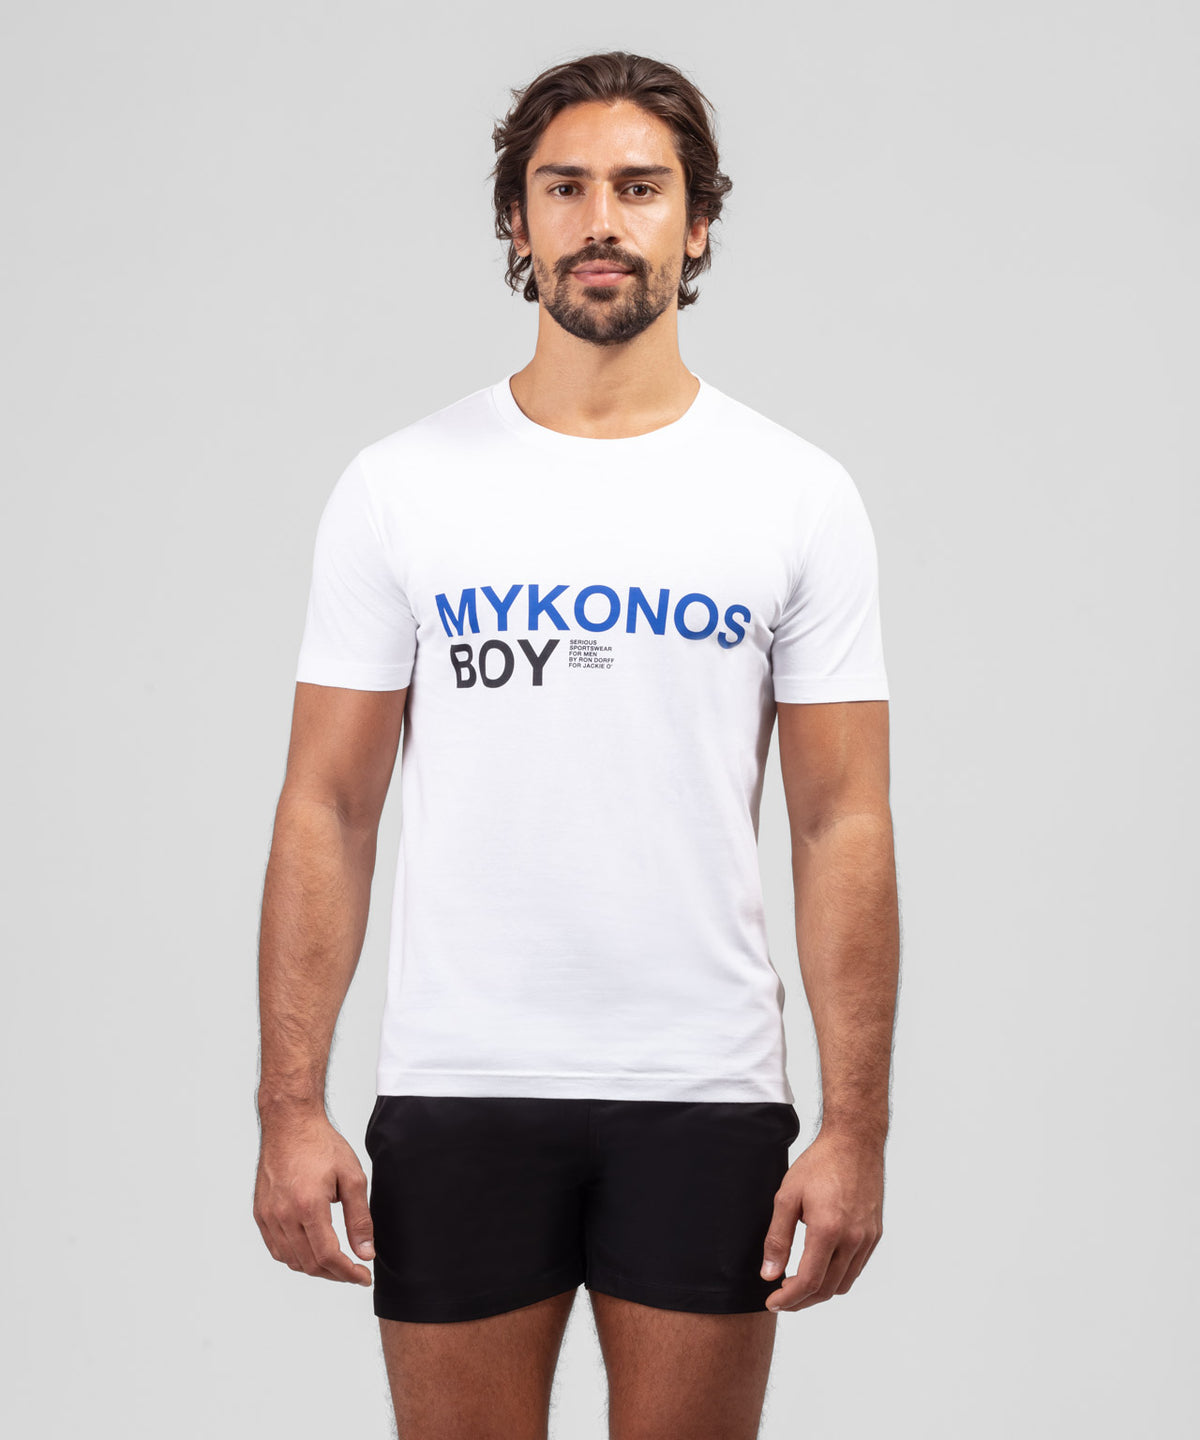 T-shirt en coton organique à imprimé MYKONOS BOY: Blanc